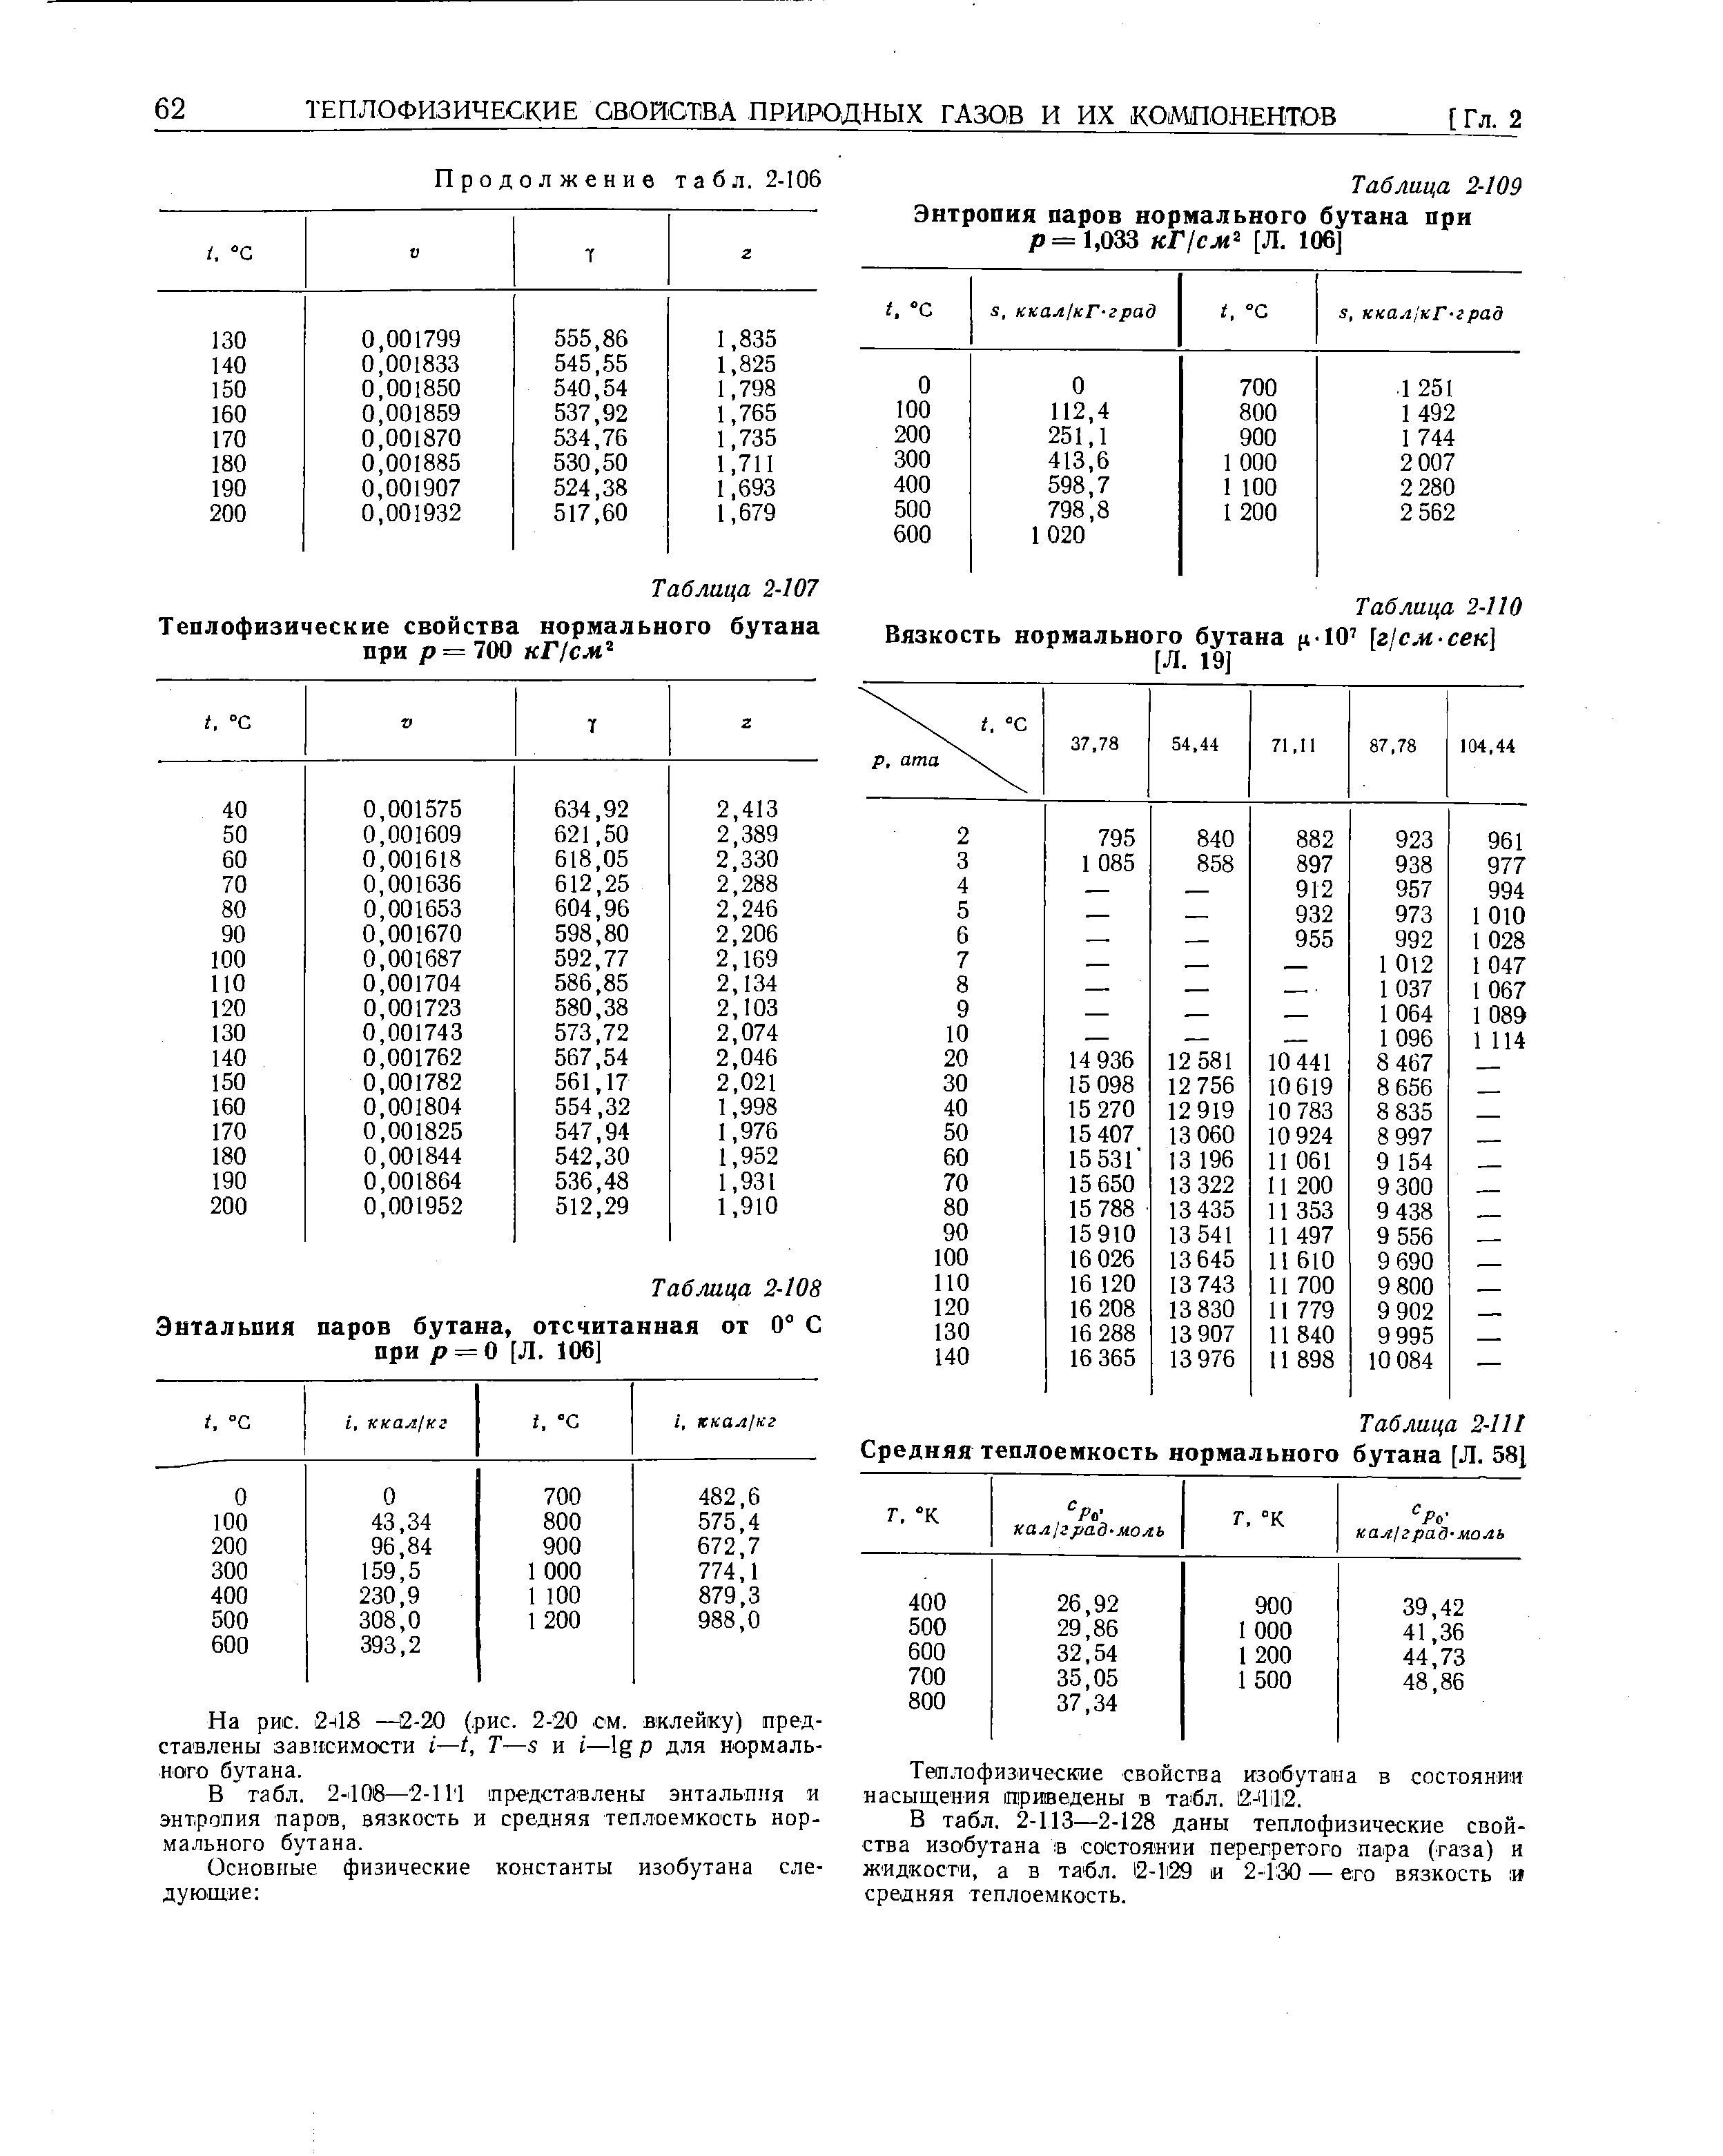 Таблица 2-109 Энтропия паров нормального бутана при р= 1,033 кГ см [Л. 106]
